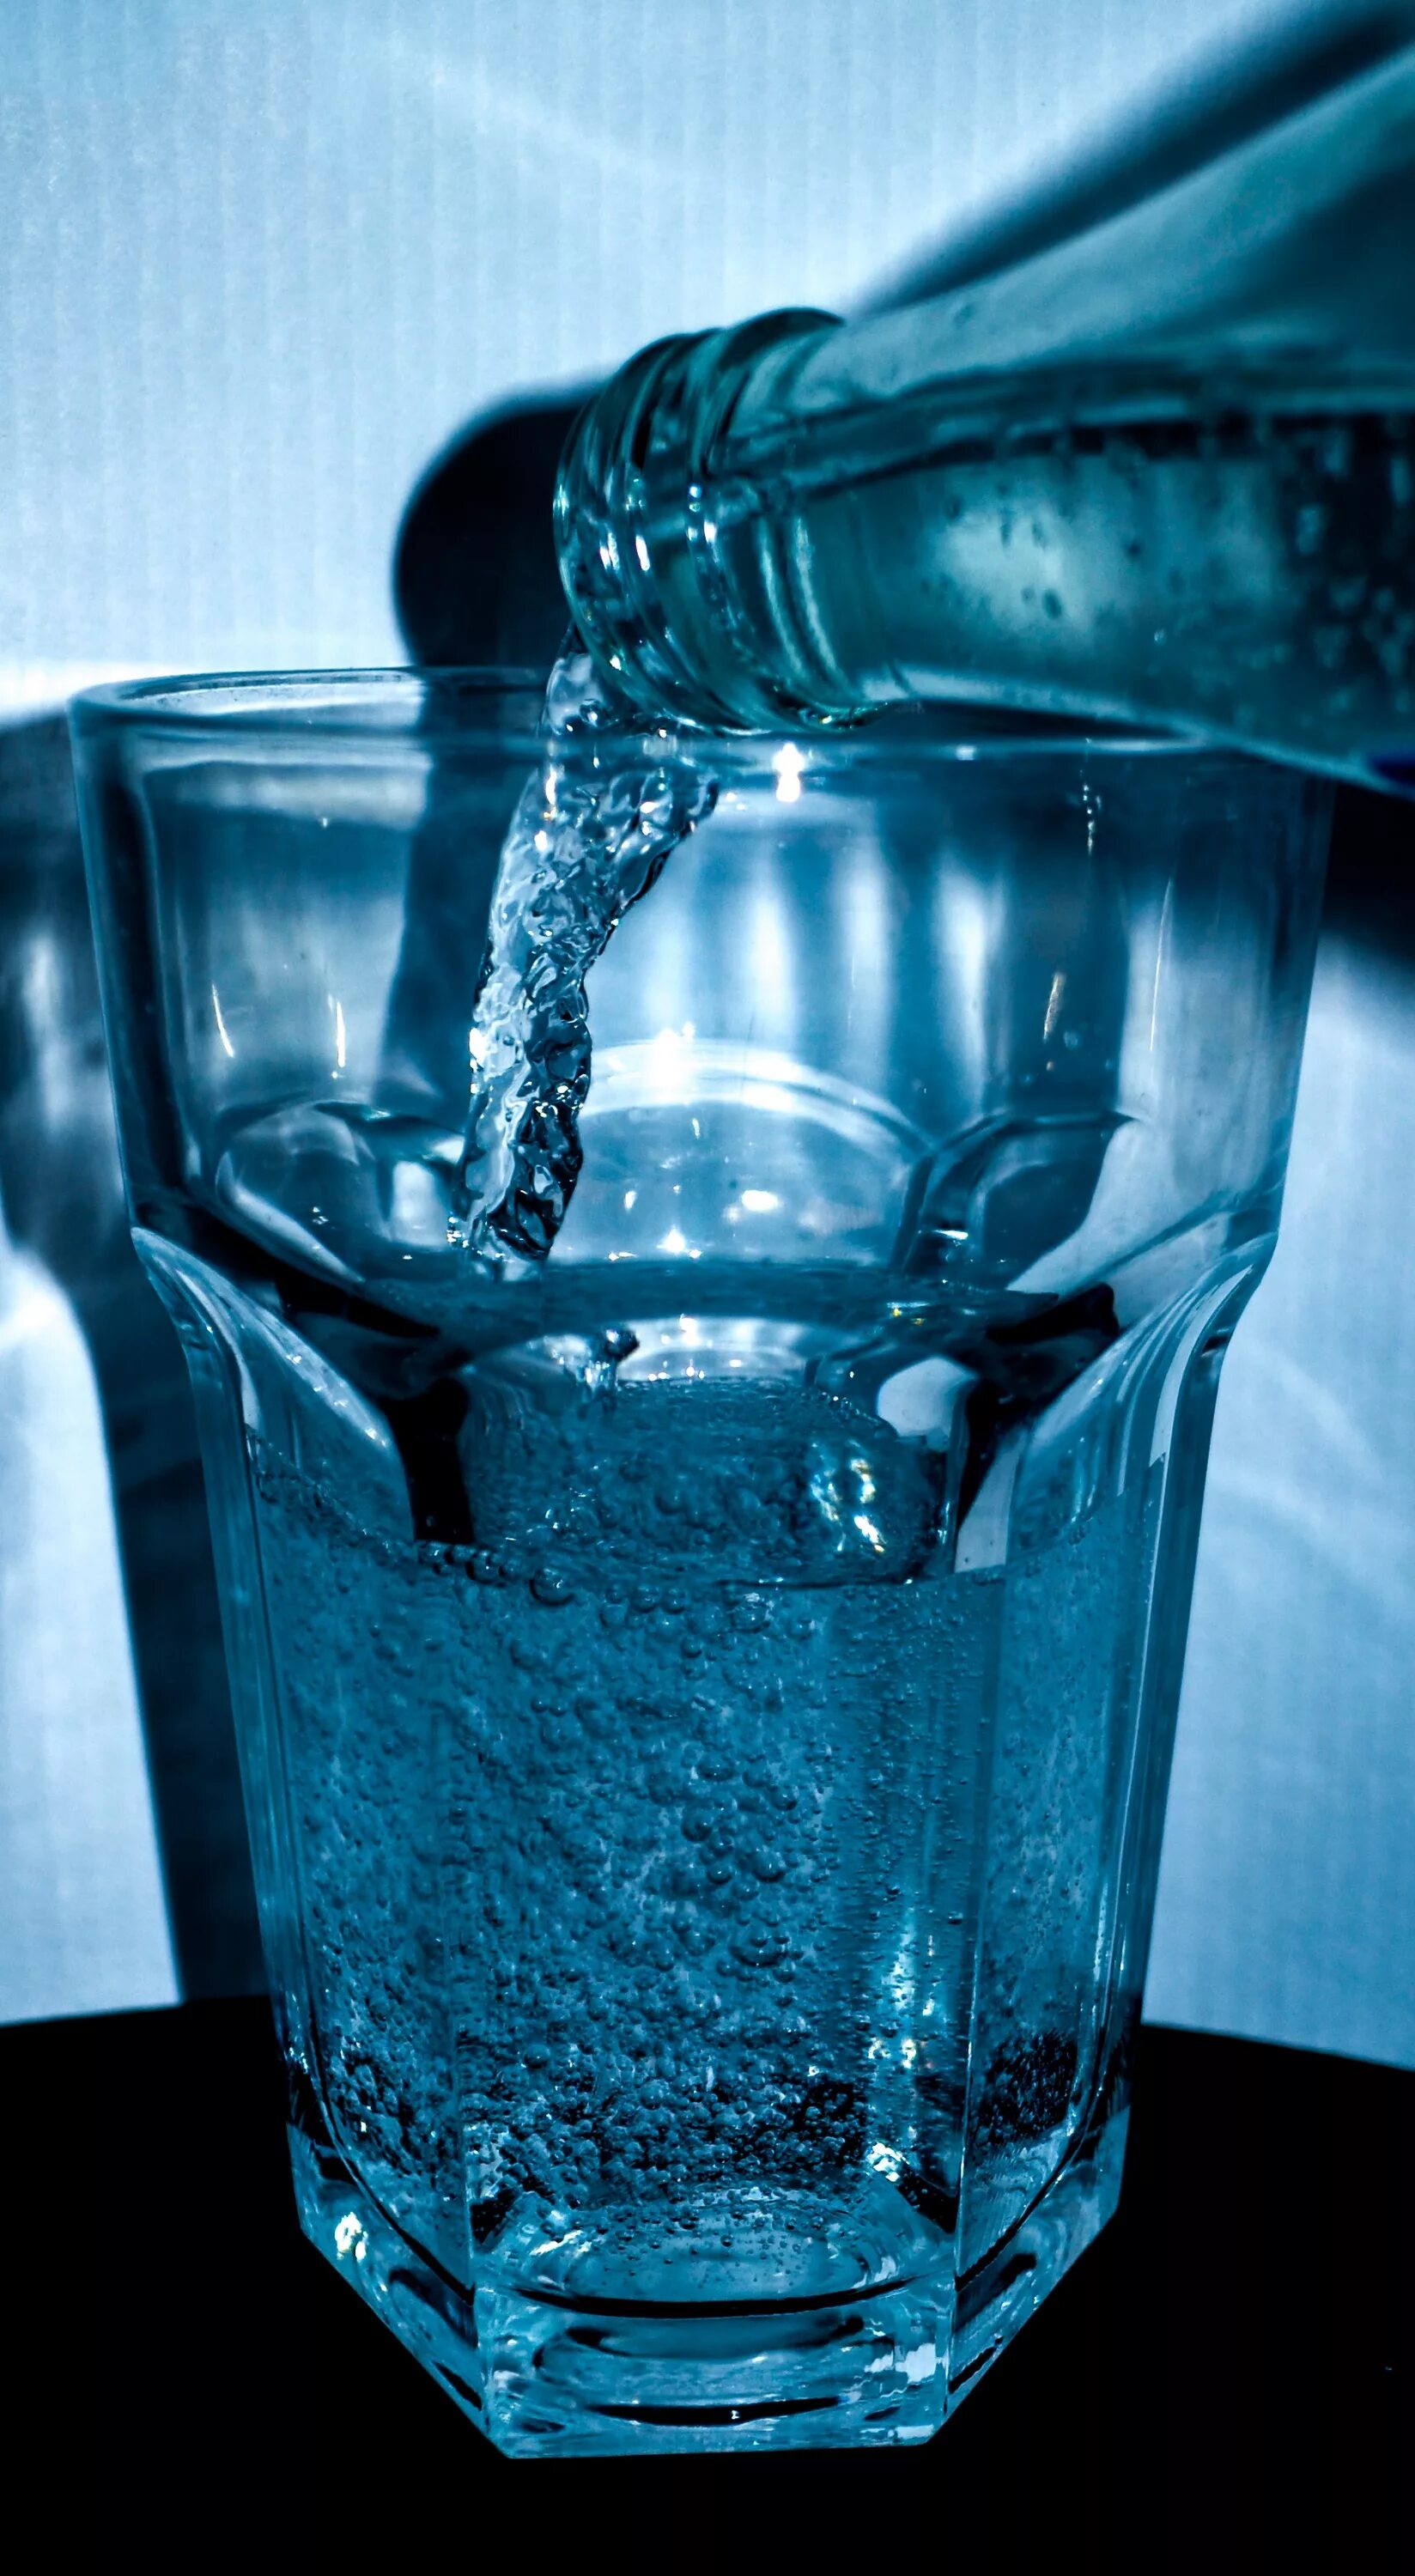 Питьевая вода дали. Вода. Стакан воды. Вода питьевая в стакане. Минералка в стакане.